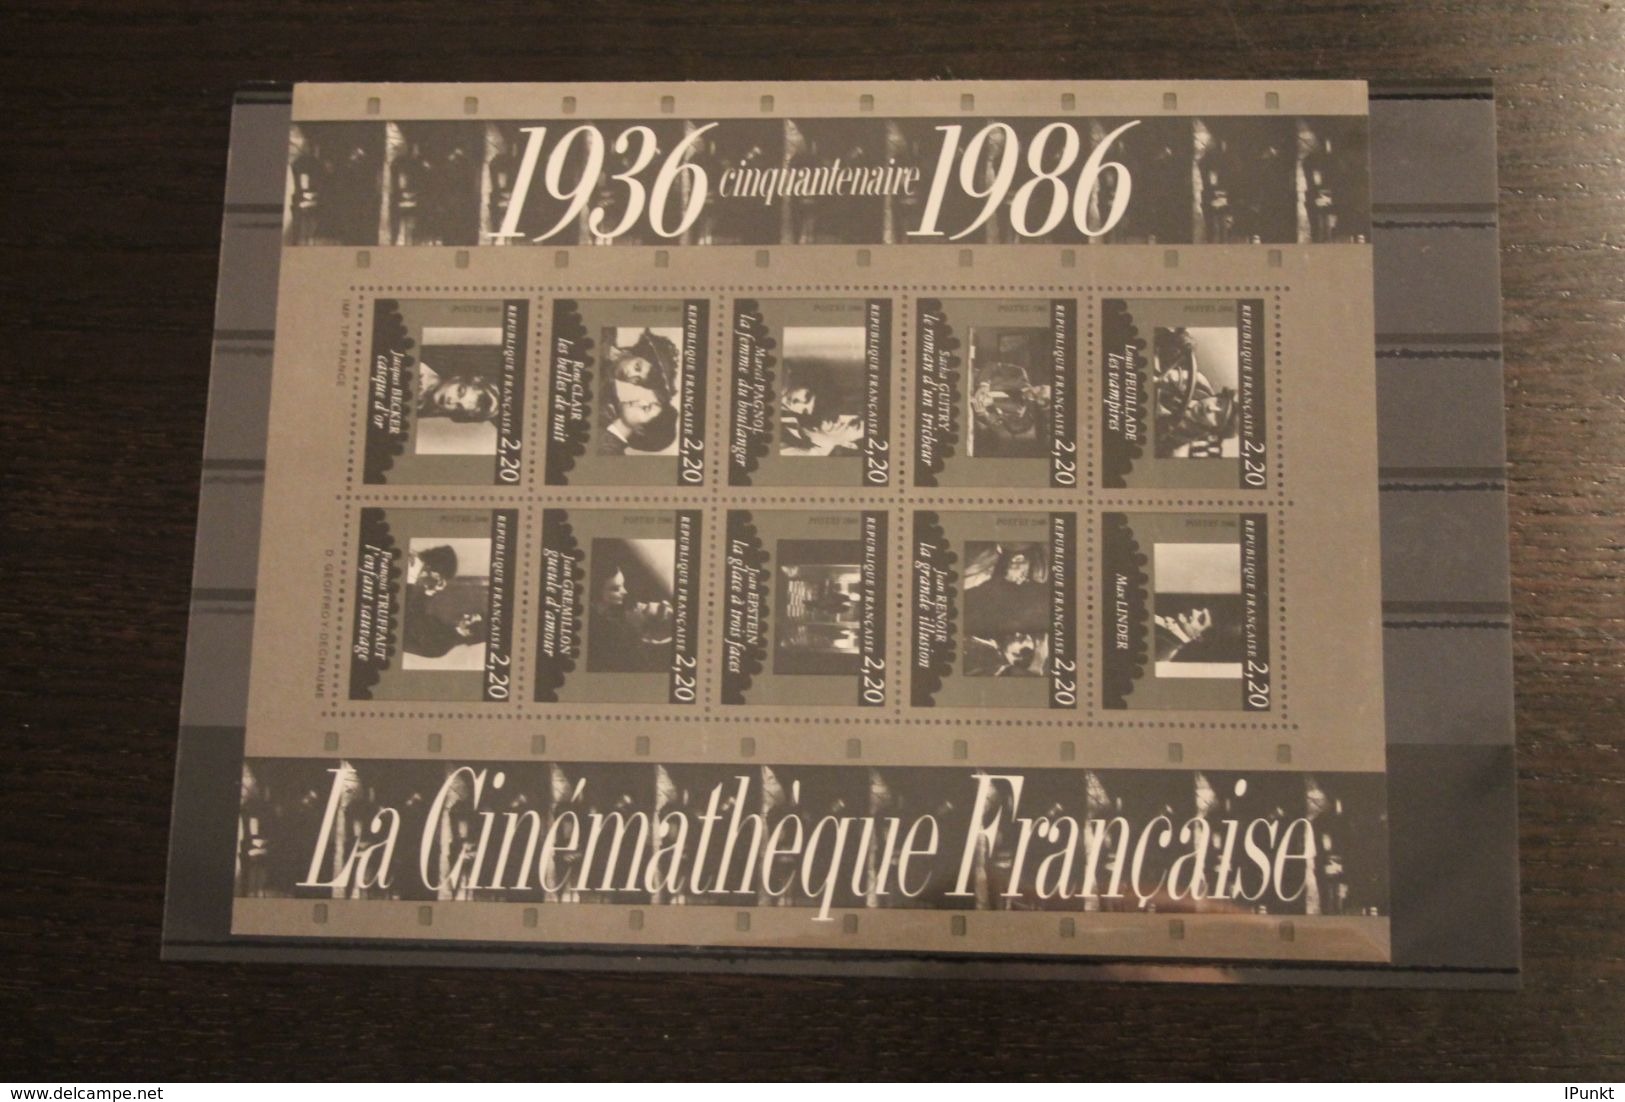 France 1986, 2525-2585; Postfrisch, Frankreich Jahrgang 1986, 56 Werte; 1 Block, 2 MH, überkomplett, 5 Steckkarten - 1980-1989